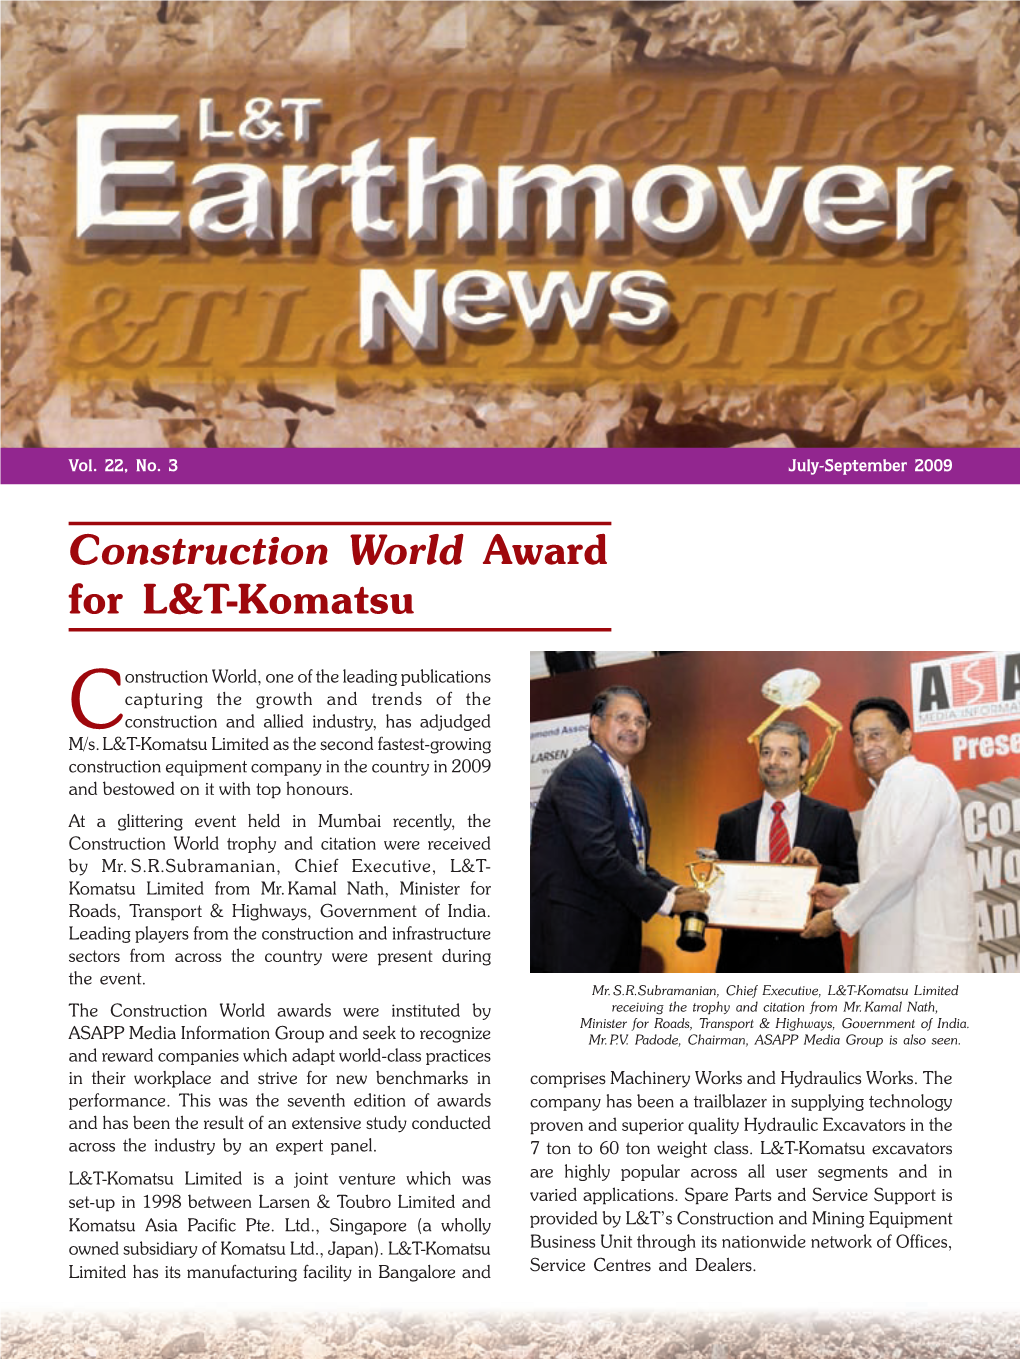 Construction World Award for L&T-Komatsu